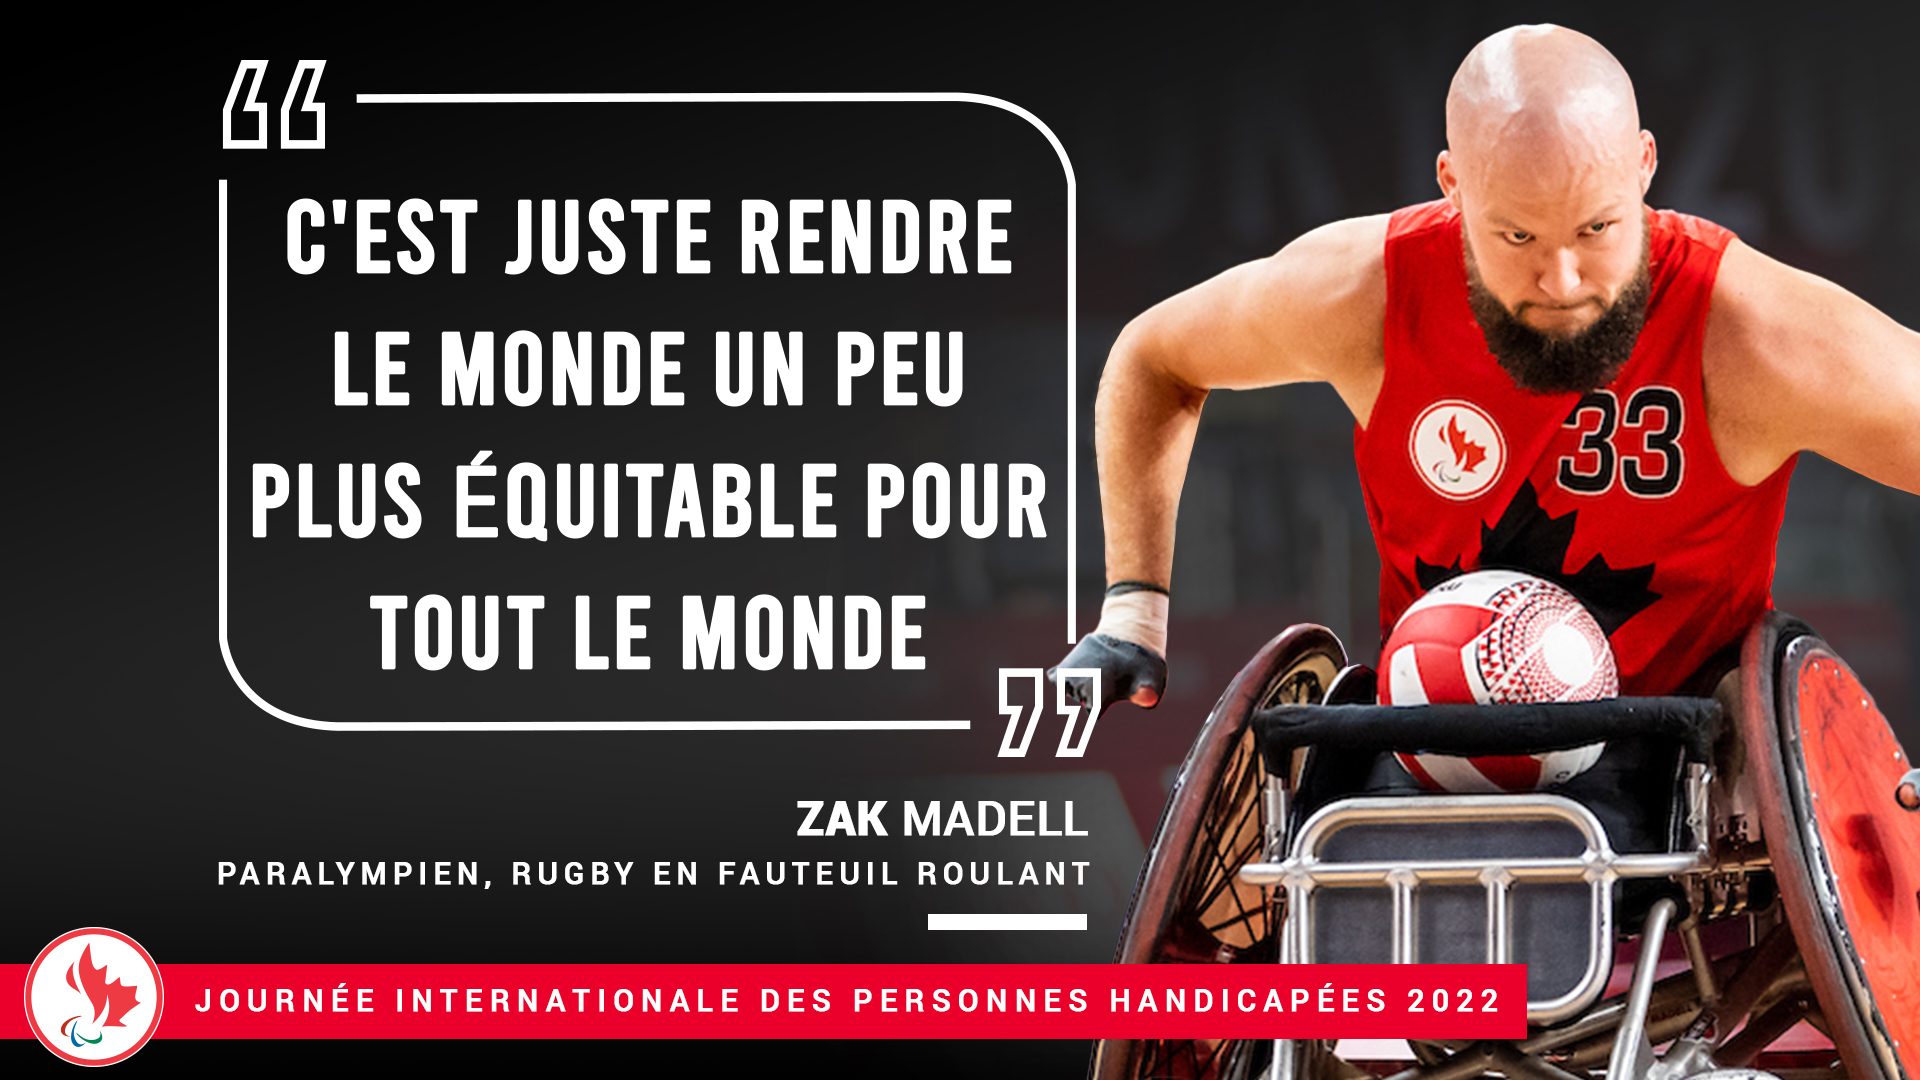 A photo de Zak Madell, rugby en fauteuil roulant, avec le quotation "C'est juste rendre le monde en peu plus équitable pour tout le monde"